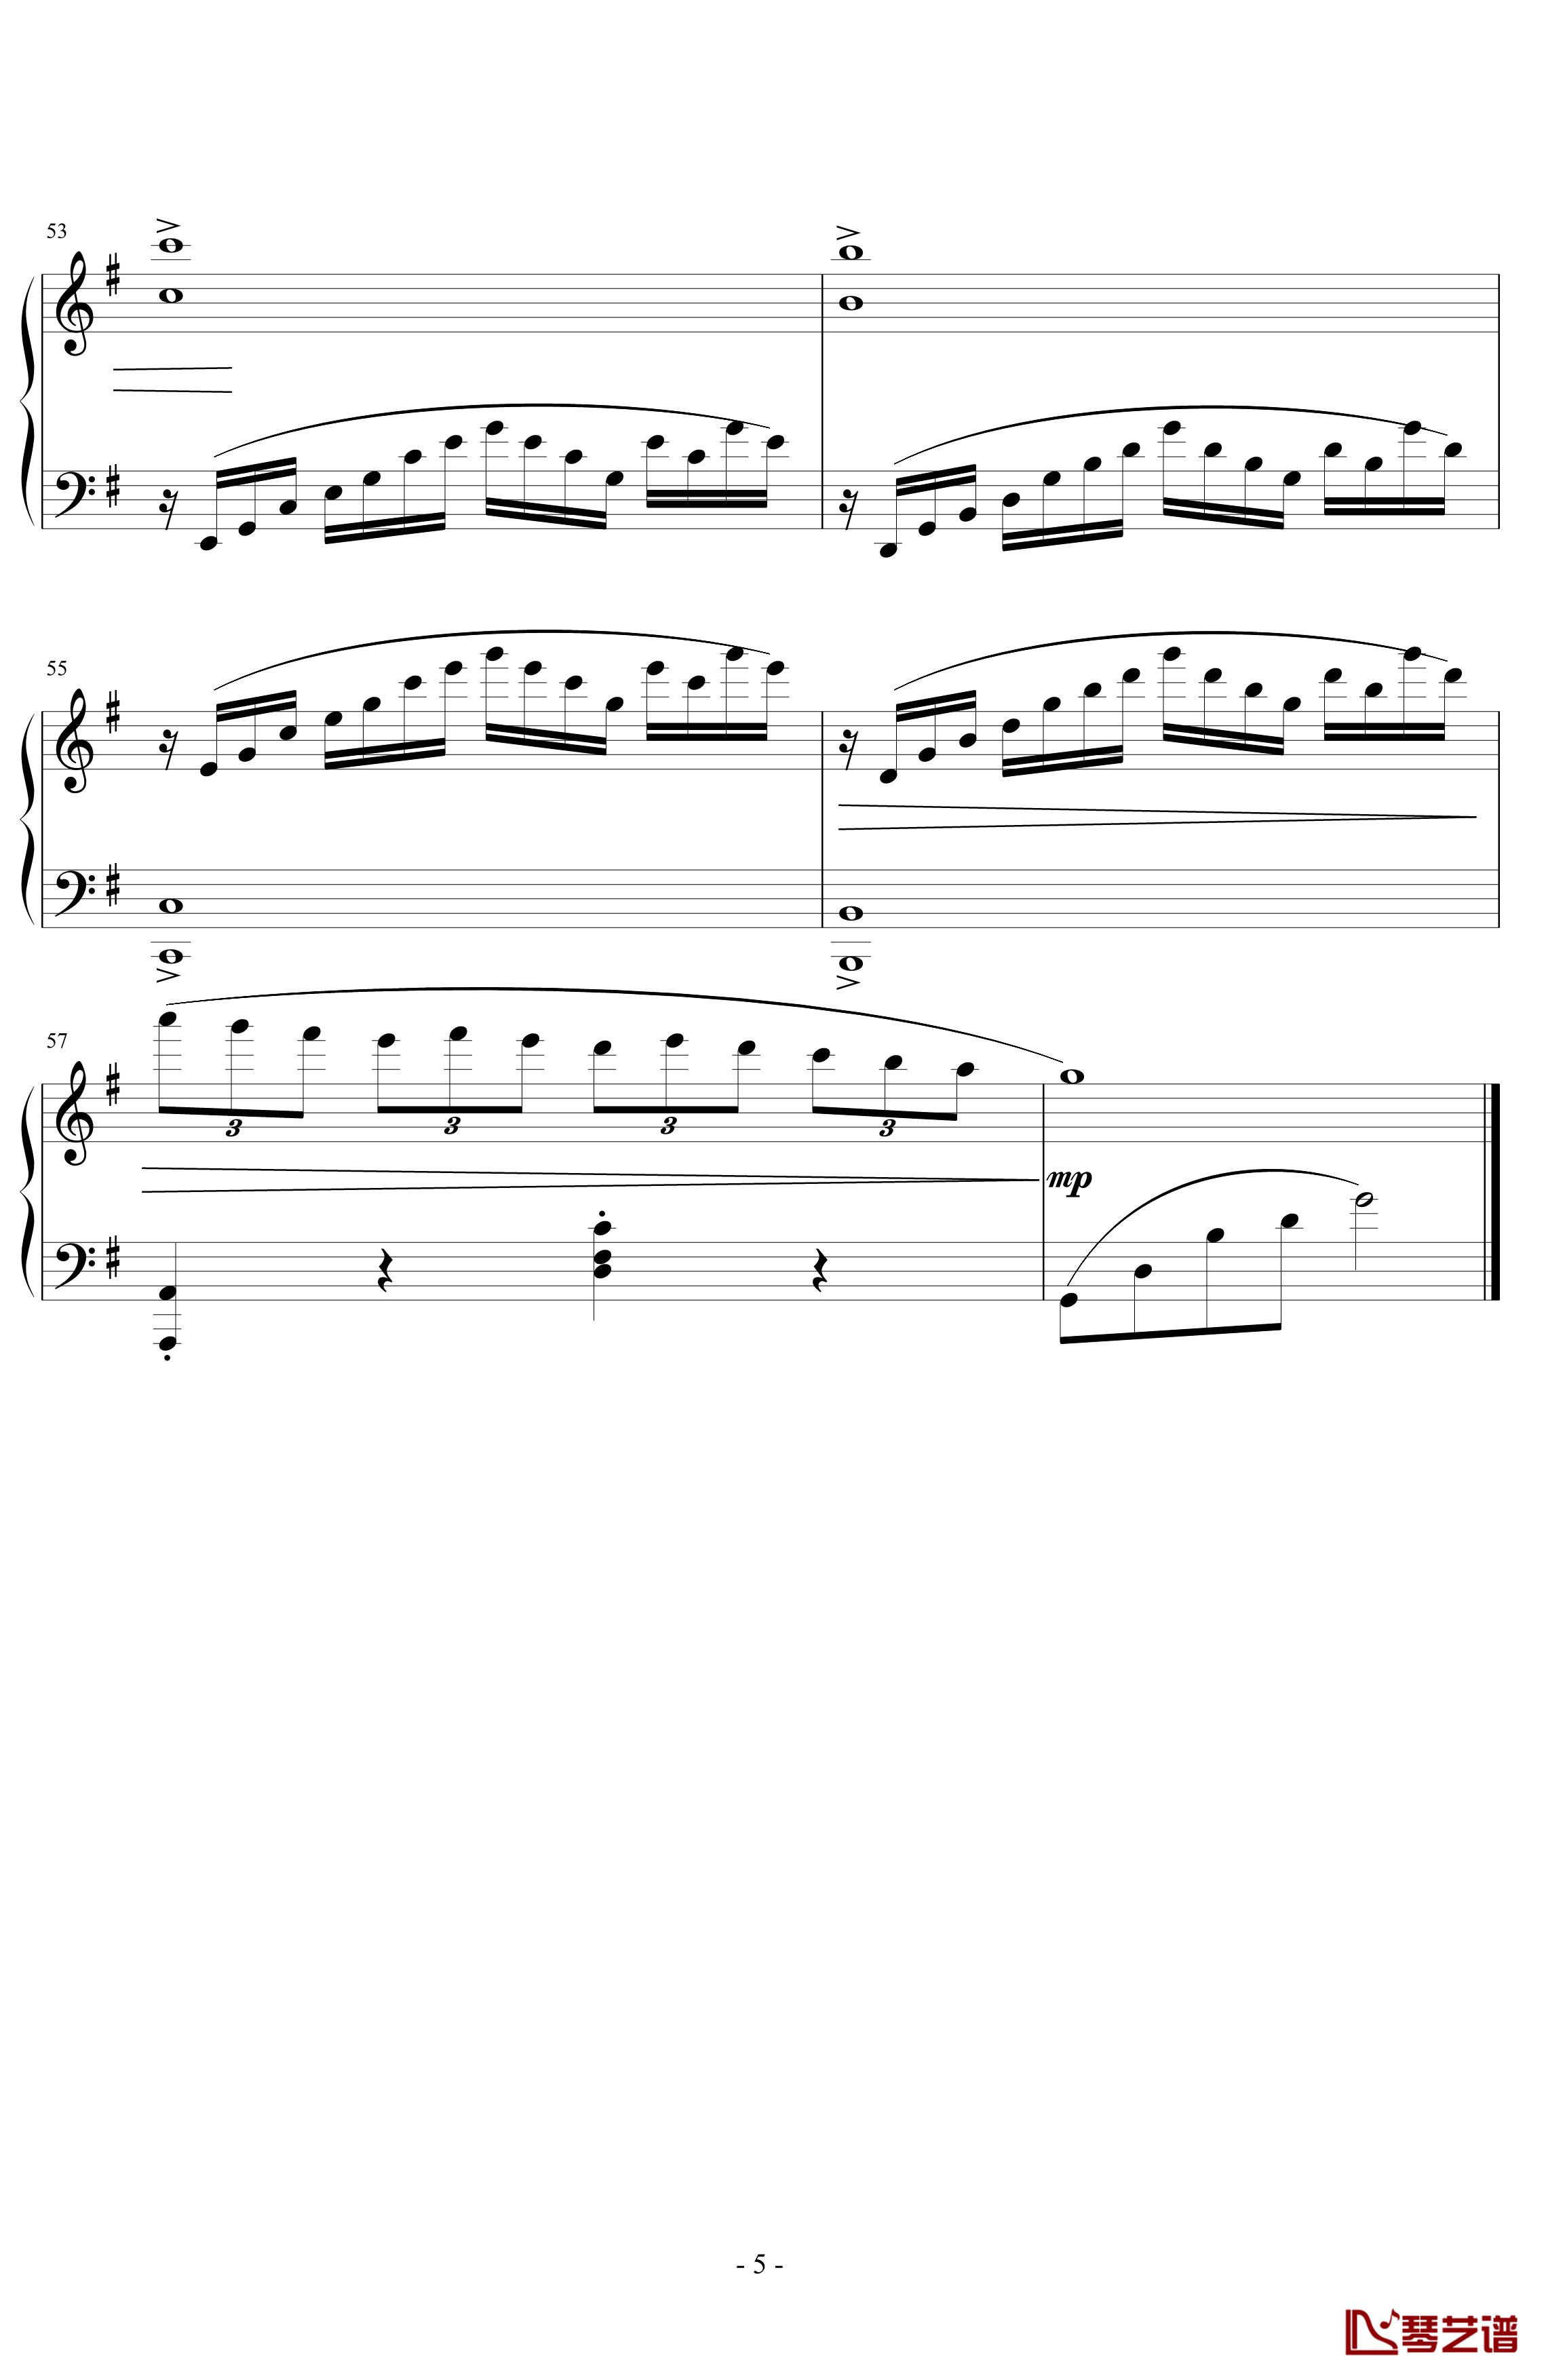 e小调小奏鸣曲钢琴谱 第一乐章-天籁传声5